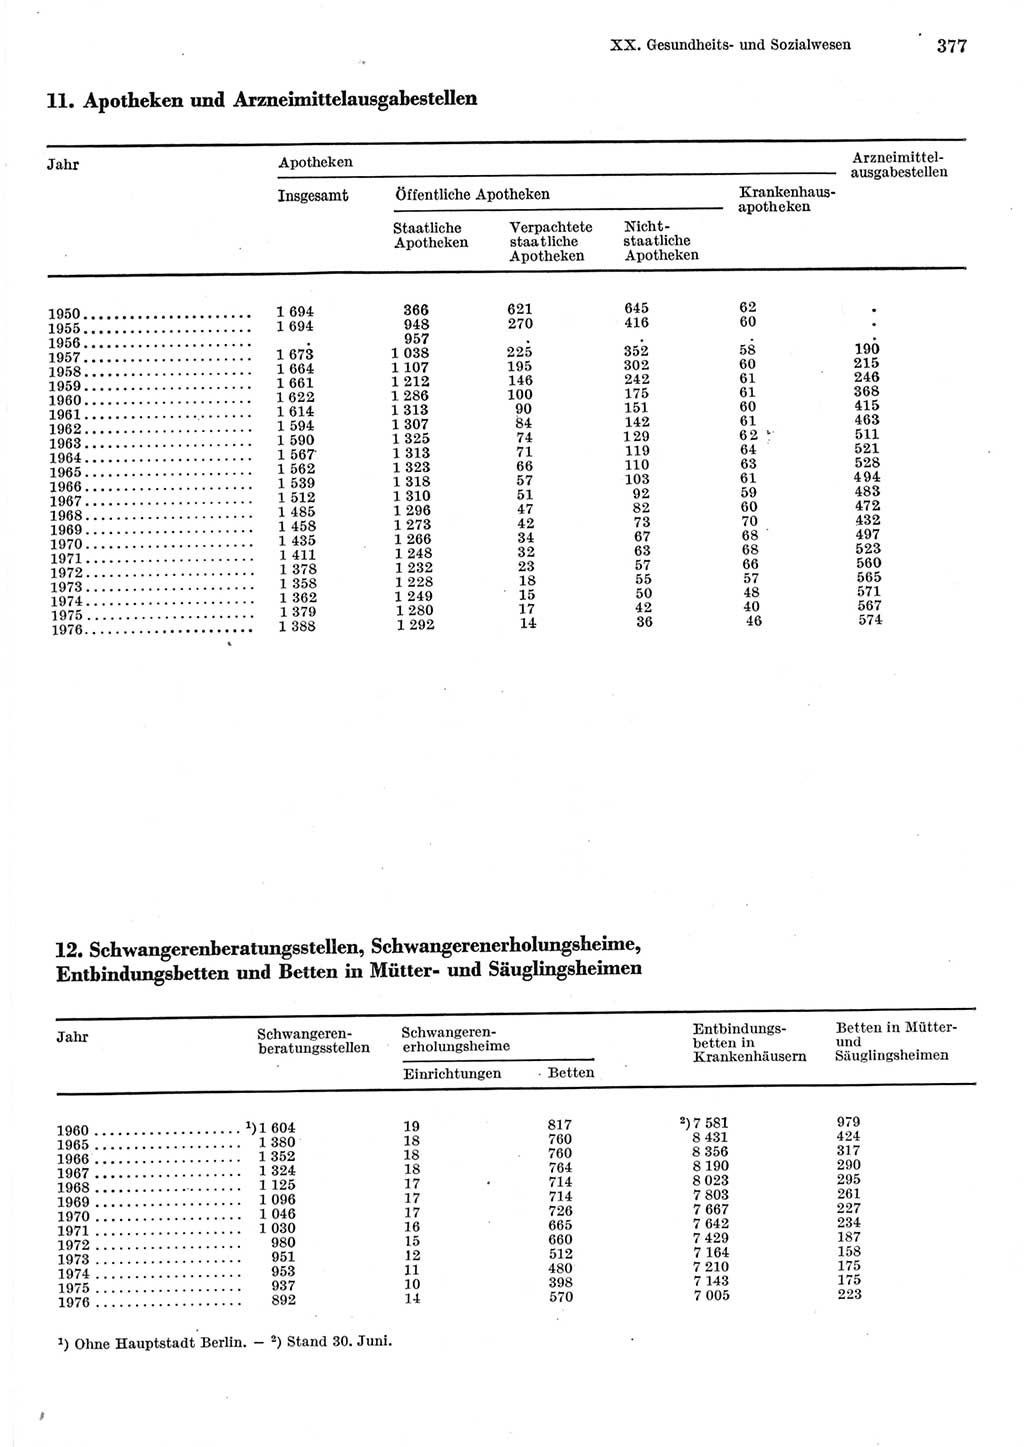 Statistisches Jahrbuch der Deutschen Demokratischen Republik (DDR) 1977, Seite 377 (Stat. Jb. DDR 1977, S. 377)